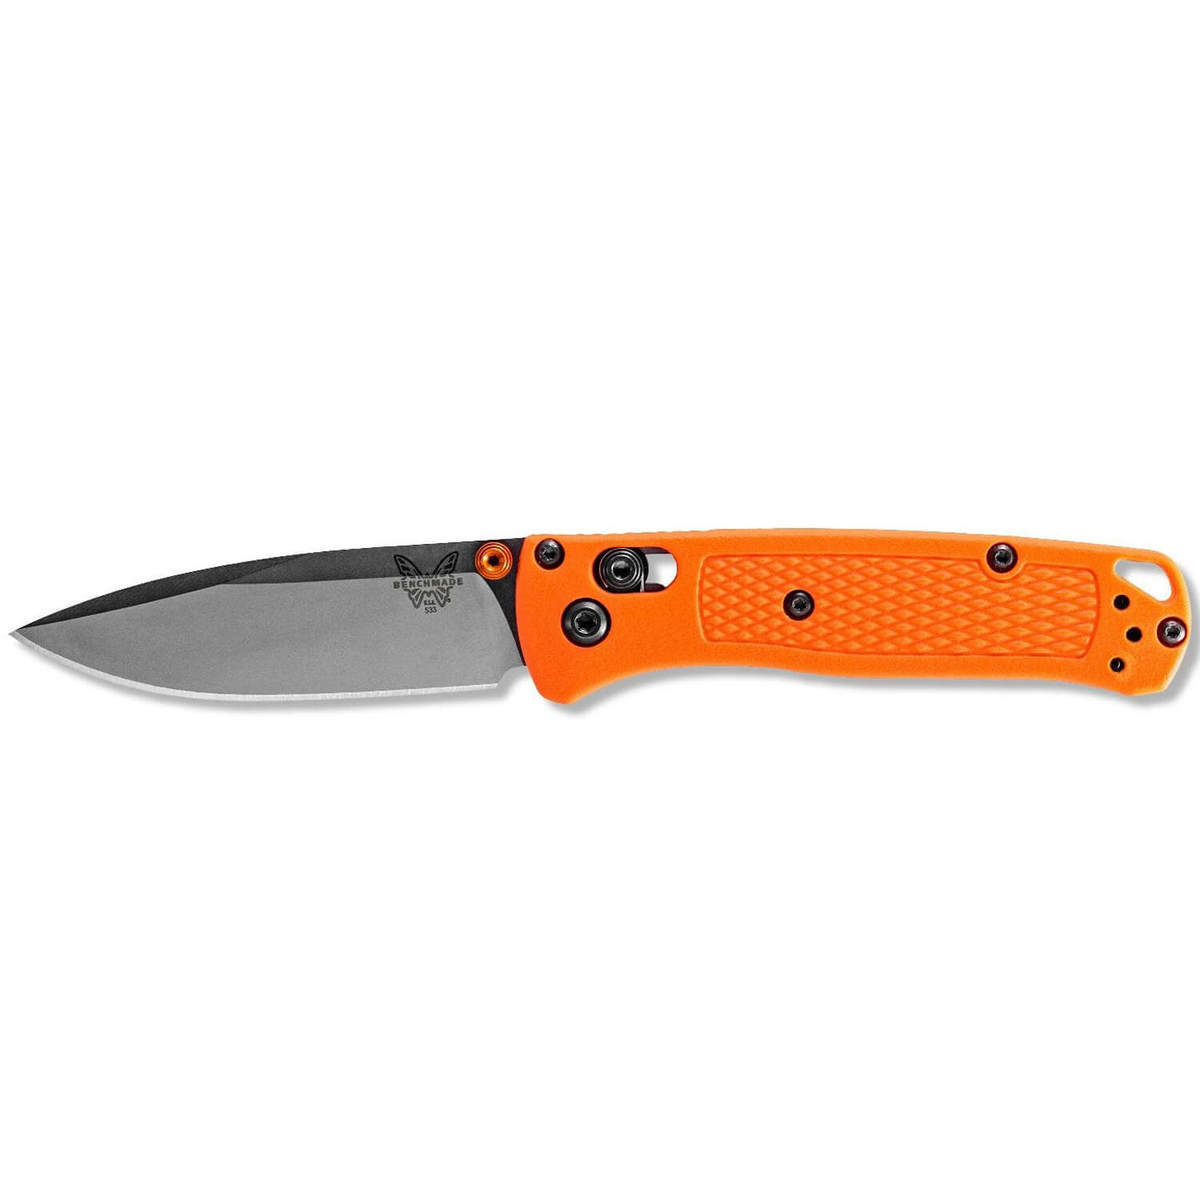 https://www.sportsmans.com/medias/benchmade-mini-bugout-28inch-folding-knife-orange-1621488-1.jpg?context=bWFzdGVyfGltYWdlc3w0NzkxOHxpbWFnZS9qcGVnfGltYWdlcy9oZWQvaDBjLzkzMTUzNDcyMDIwNzguanBnfGEzYWRmYWEwNDRjY2RhNGU0N2E2NTk5MjY2N2U1MzRiMzU2OGRhMzAxYzM5YWZiZWUxNjAyZjZjMGEzN2E1OWM